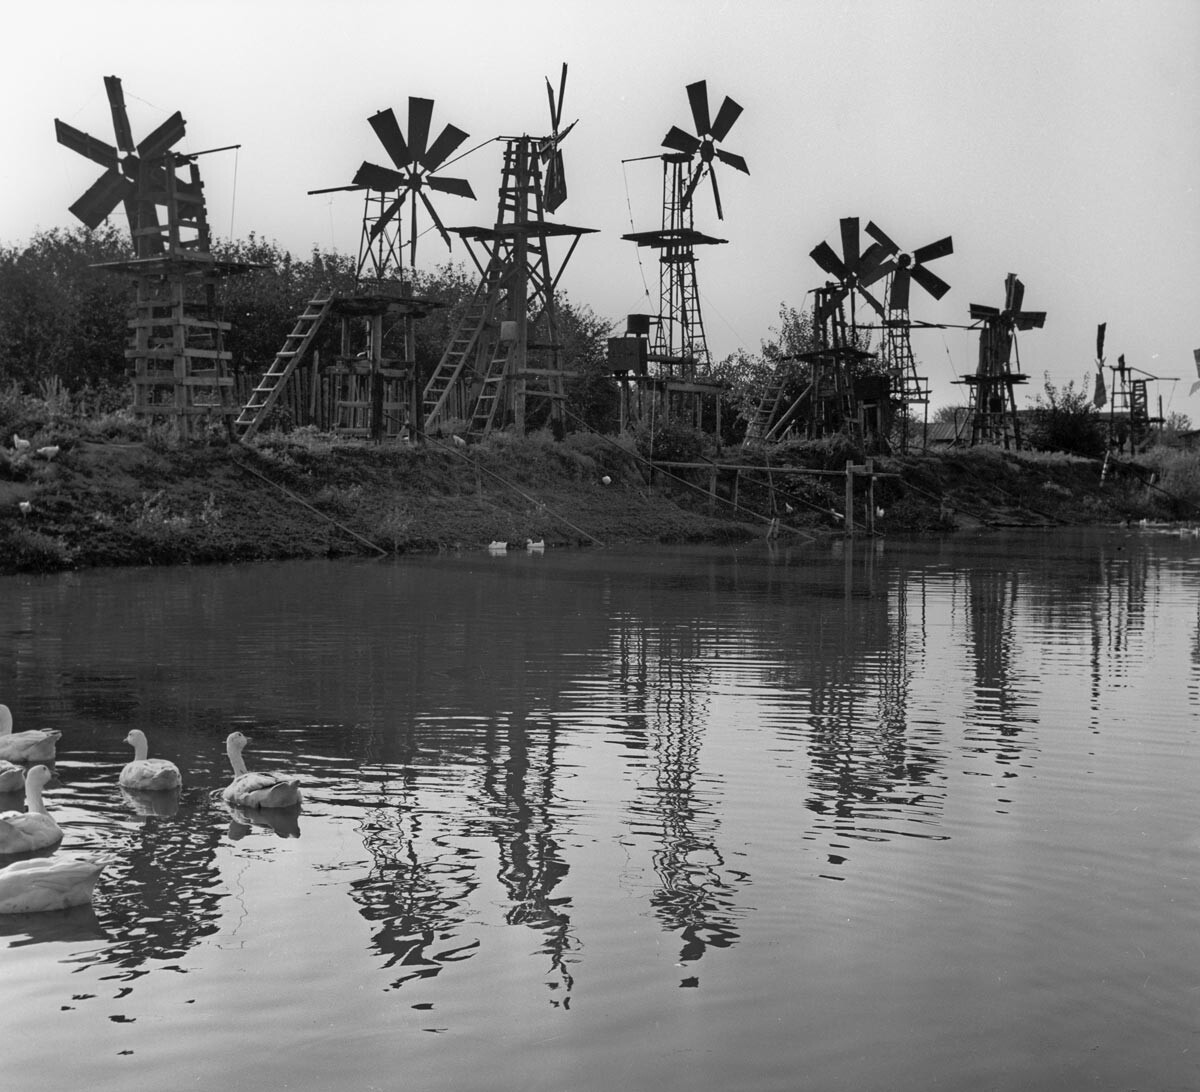 Астрахань. Ветроэлектрическая установка на берегу озера, с помощью которой вода подается на орошаемые участки сельскохозяйственных угодий, 1969.